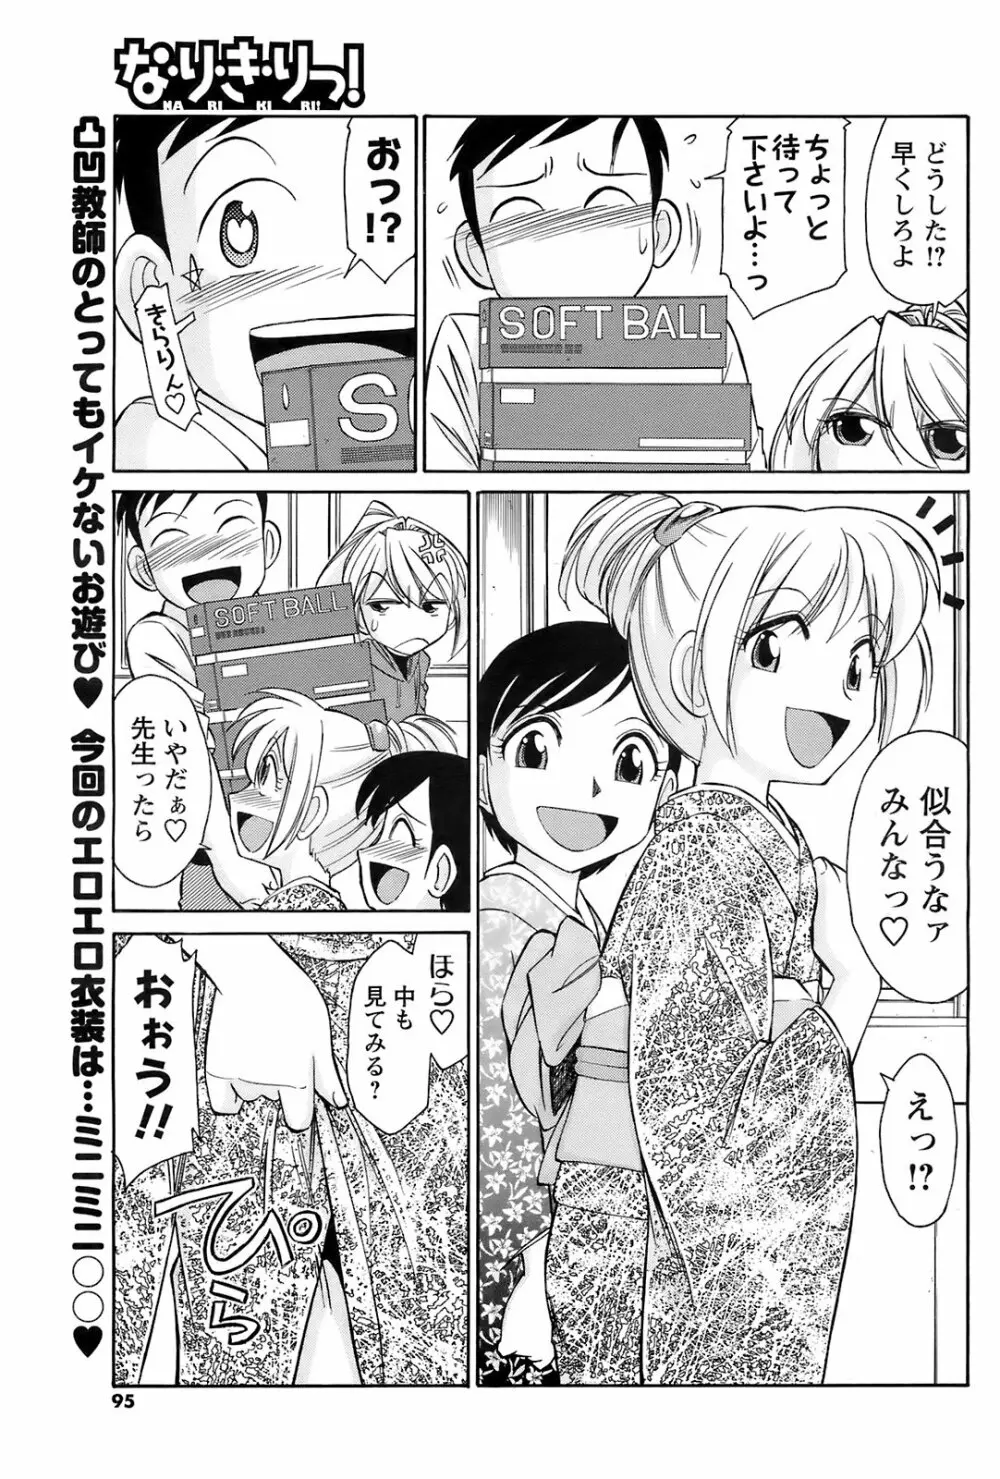 メンズヤングスペシャルIKAZUCHI雷 Vol.7 2008年9月号増刊 94ページ